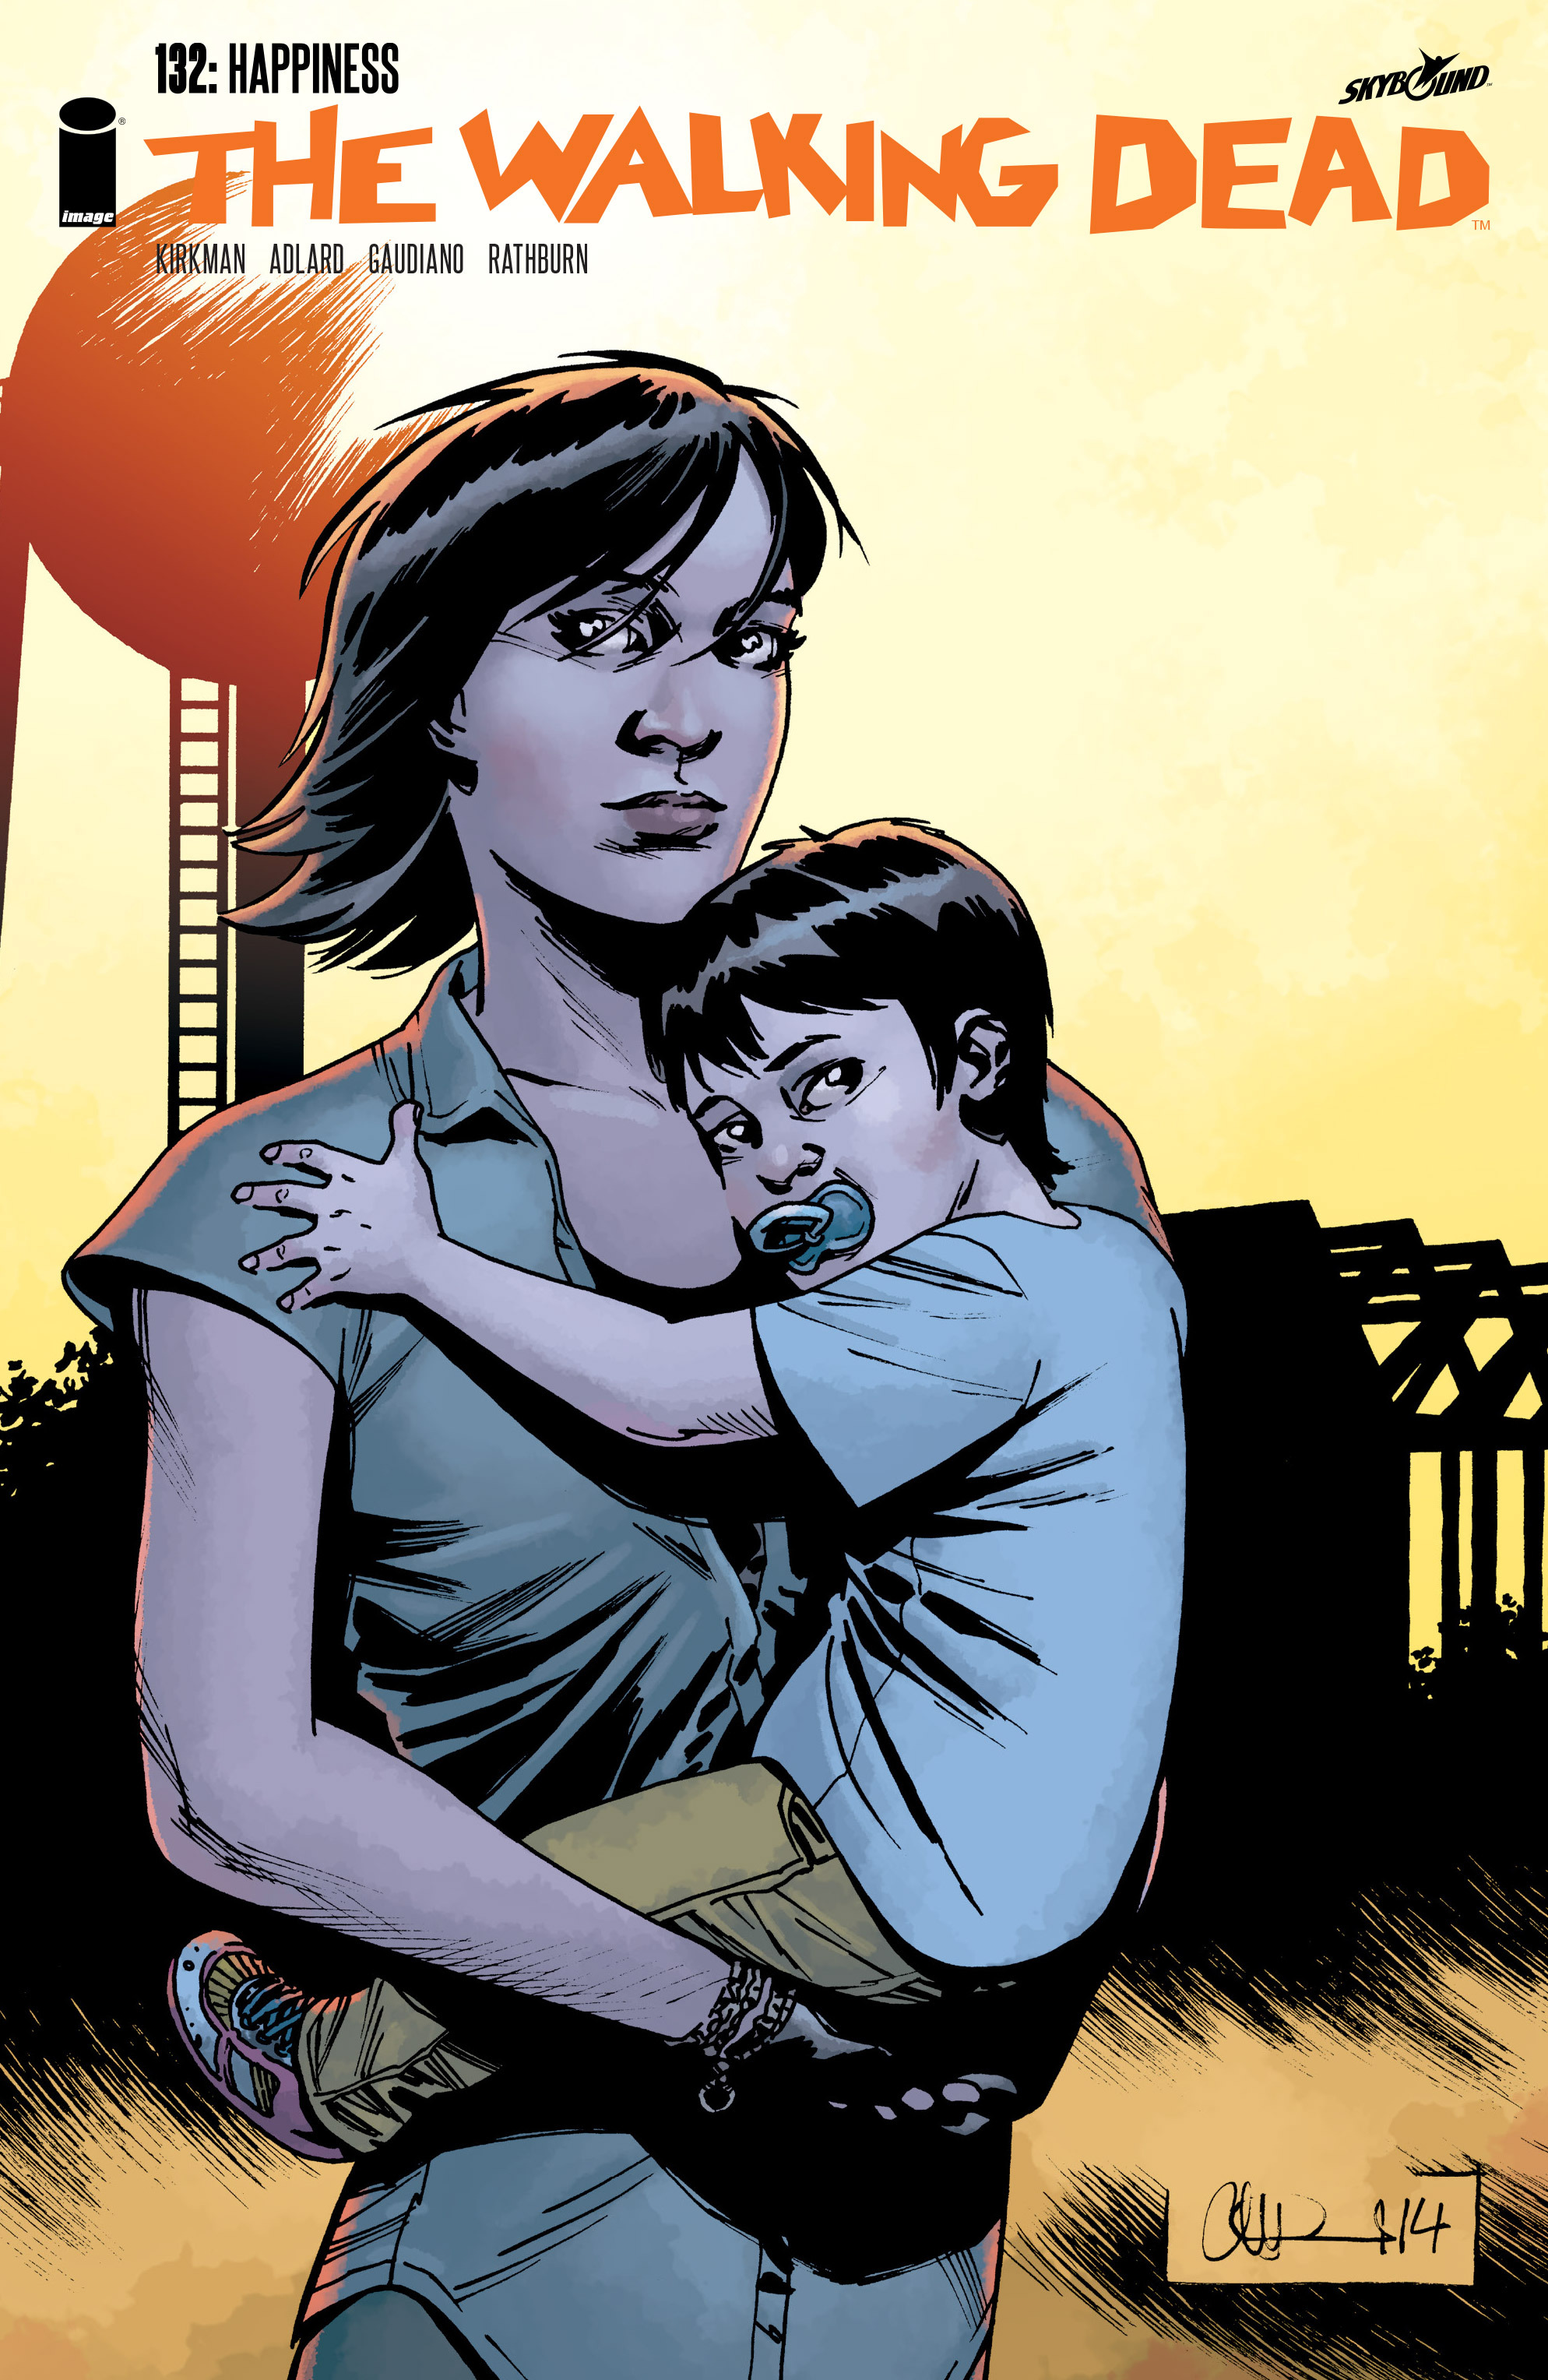 Read online The Walking Dead comic -  Issue #132 - 1